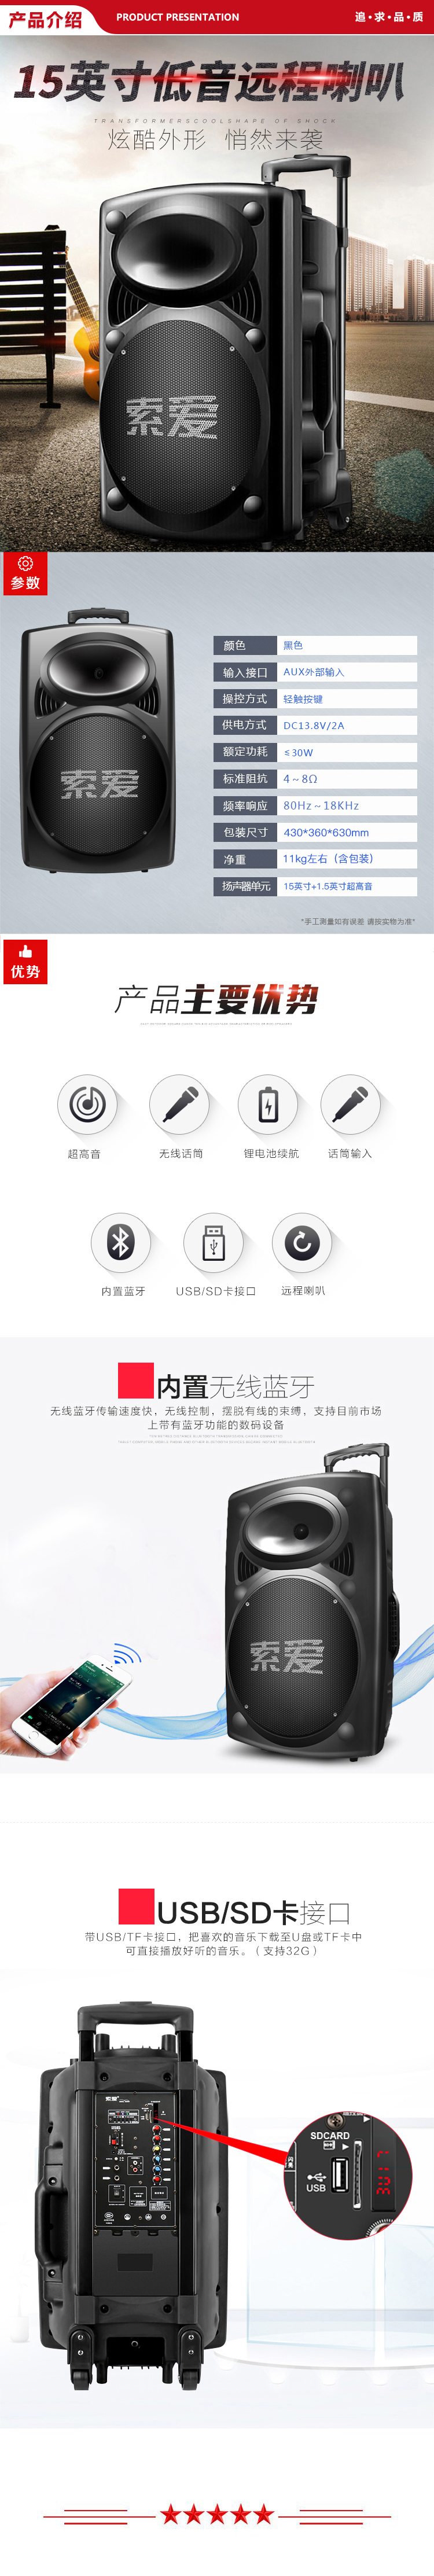 索爱 soaiy SA-X20 15英寸大功率音响 户外便携式蓝牙音箱 扩音器 无线麦克风 .jpg